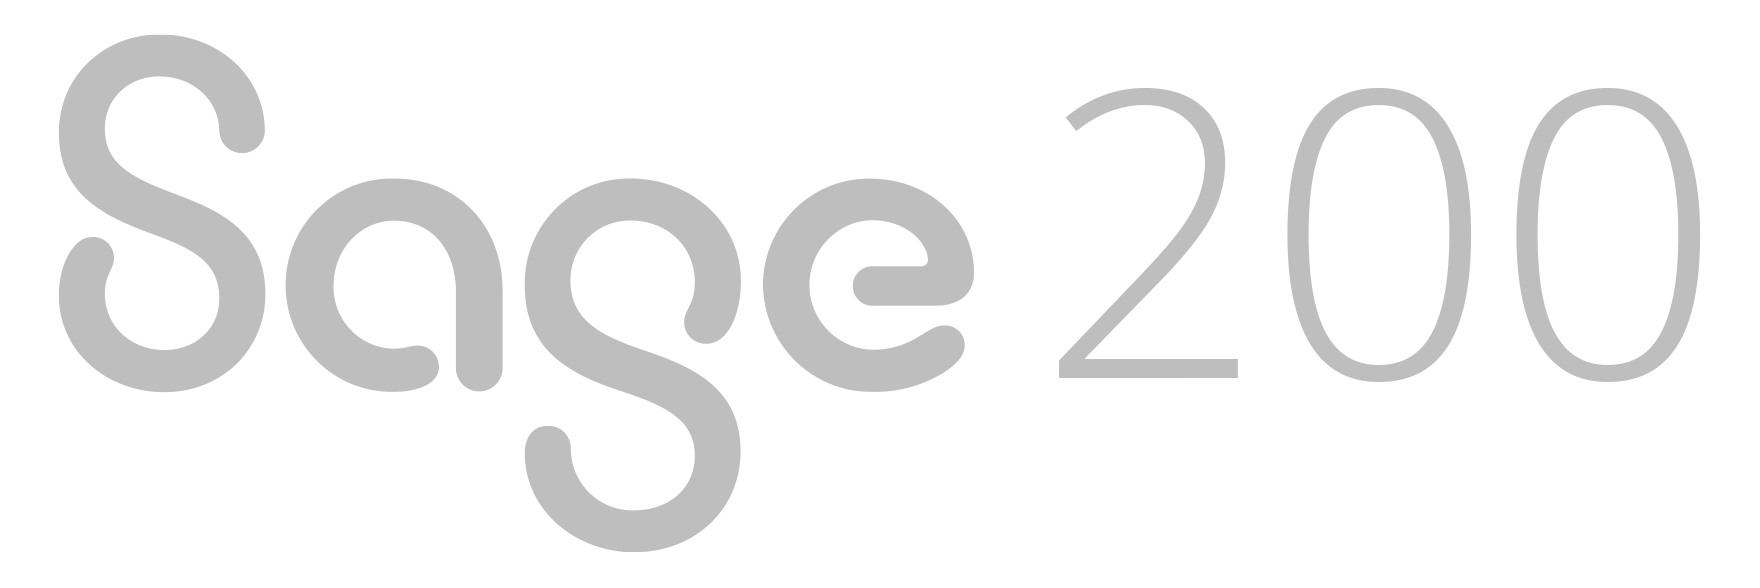 Sage 200. El software de gestión para PYMES